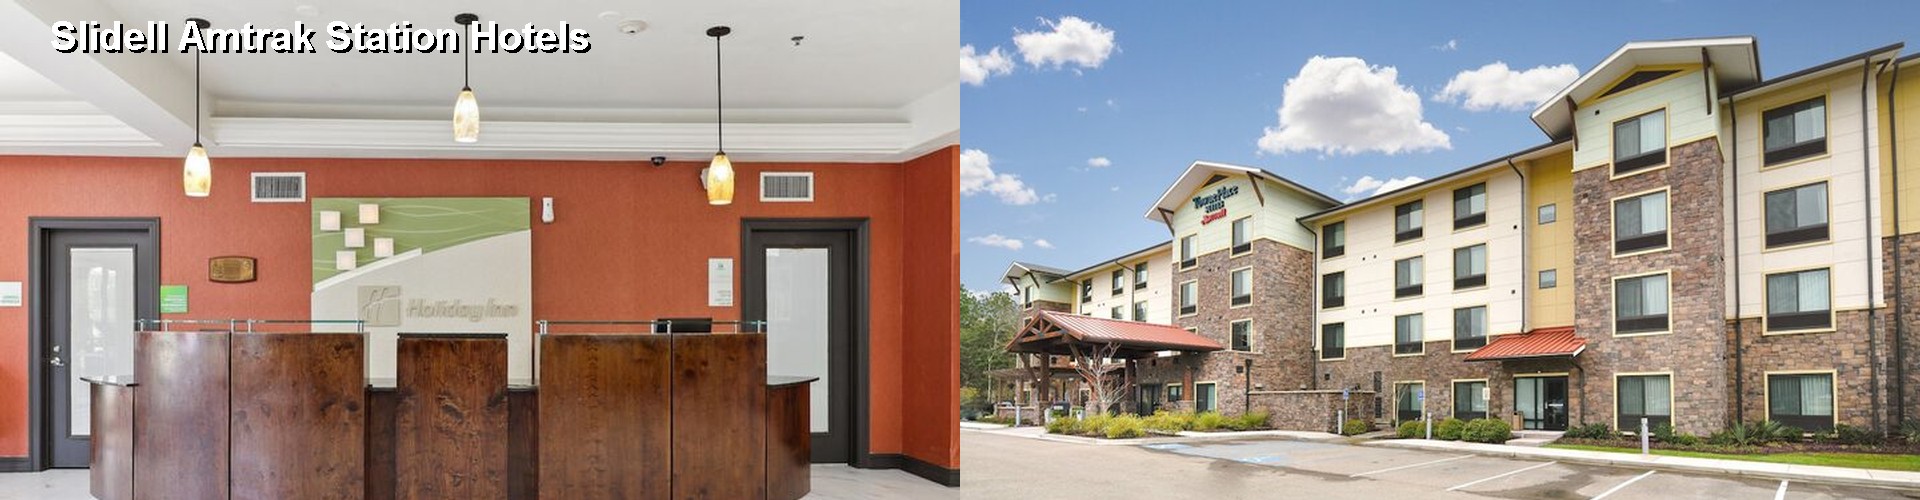 5 Best Hotels near Slidell Amtrak Station